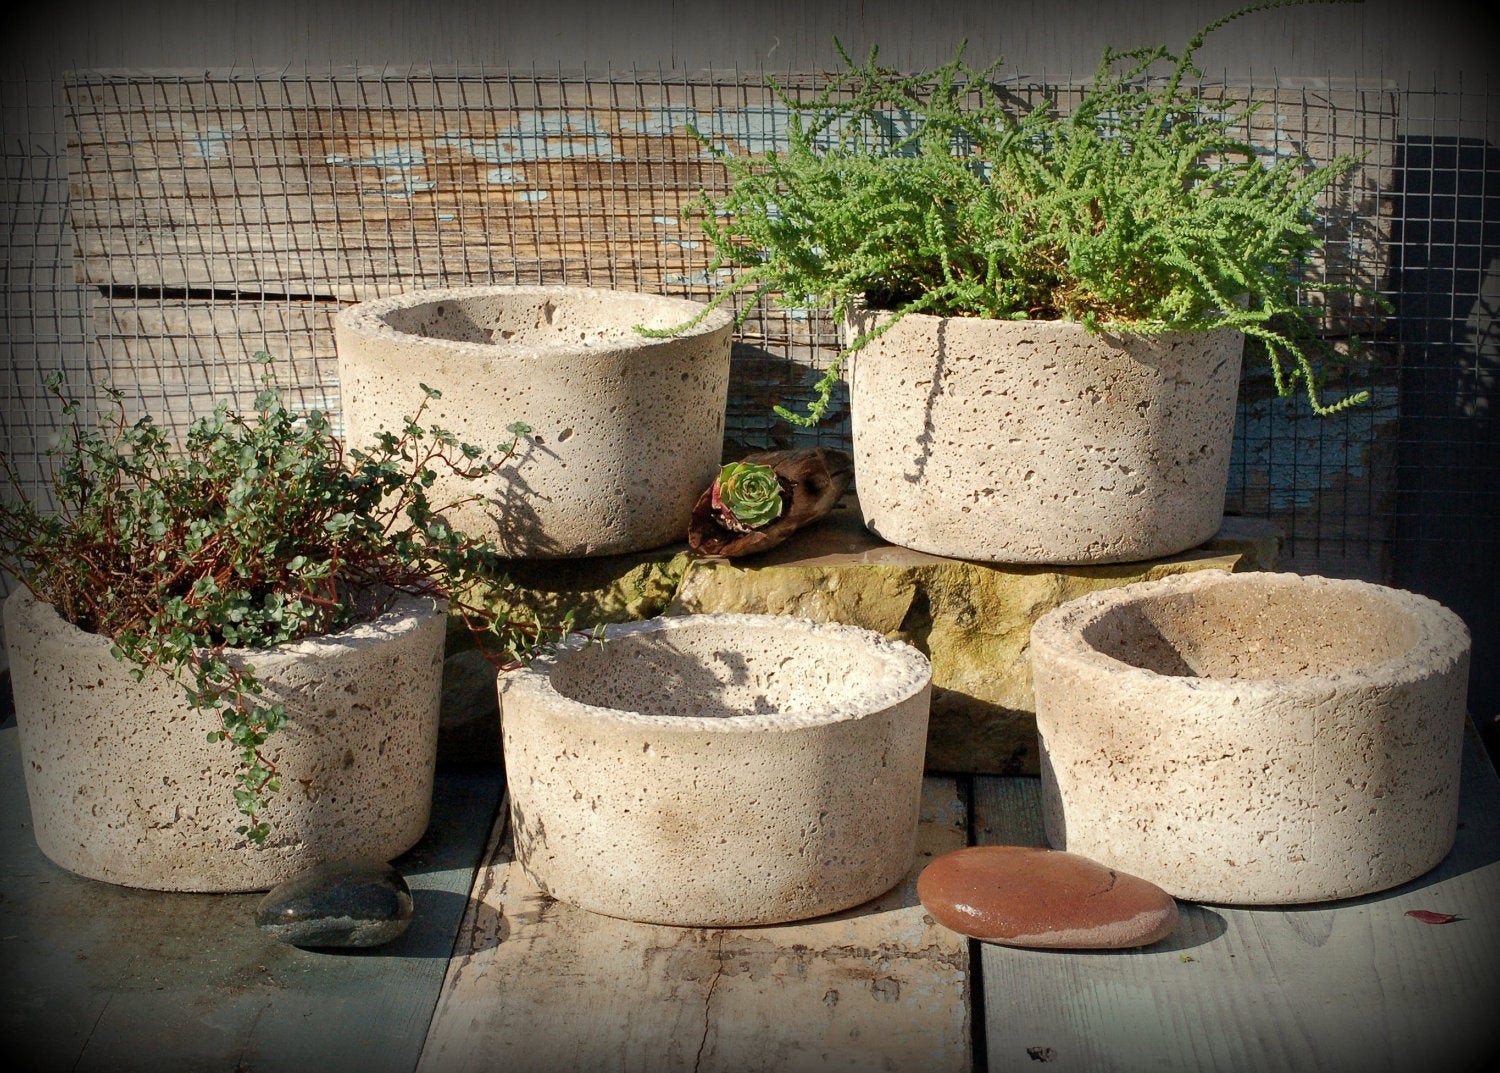 Best ideas about Concrete Pots DIY Lightweight
. Save or Pin 5 Simple Hypertufa Pots Lightweight Concrete Planter Now.